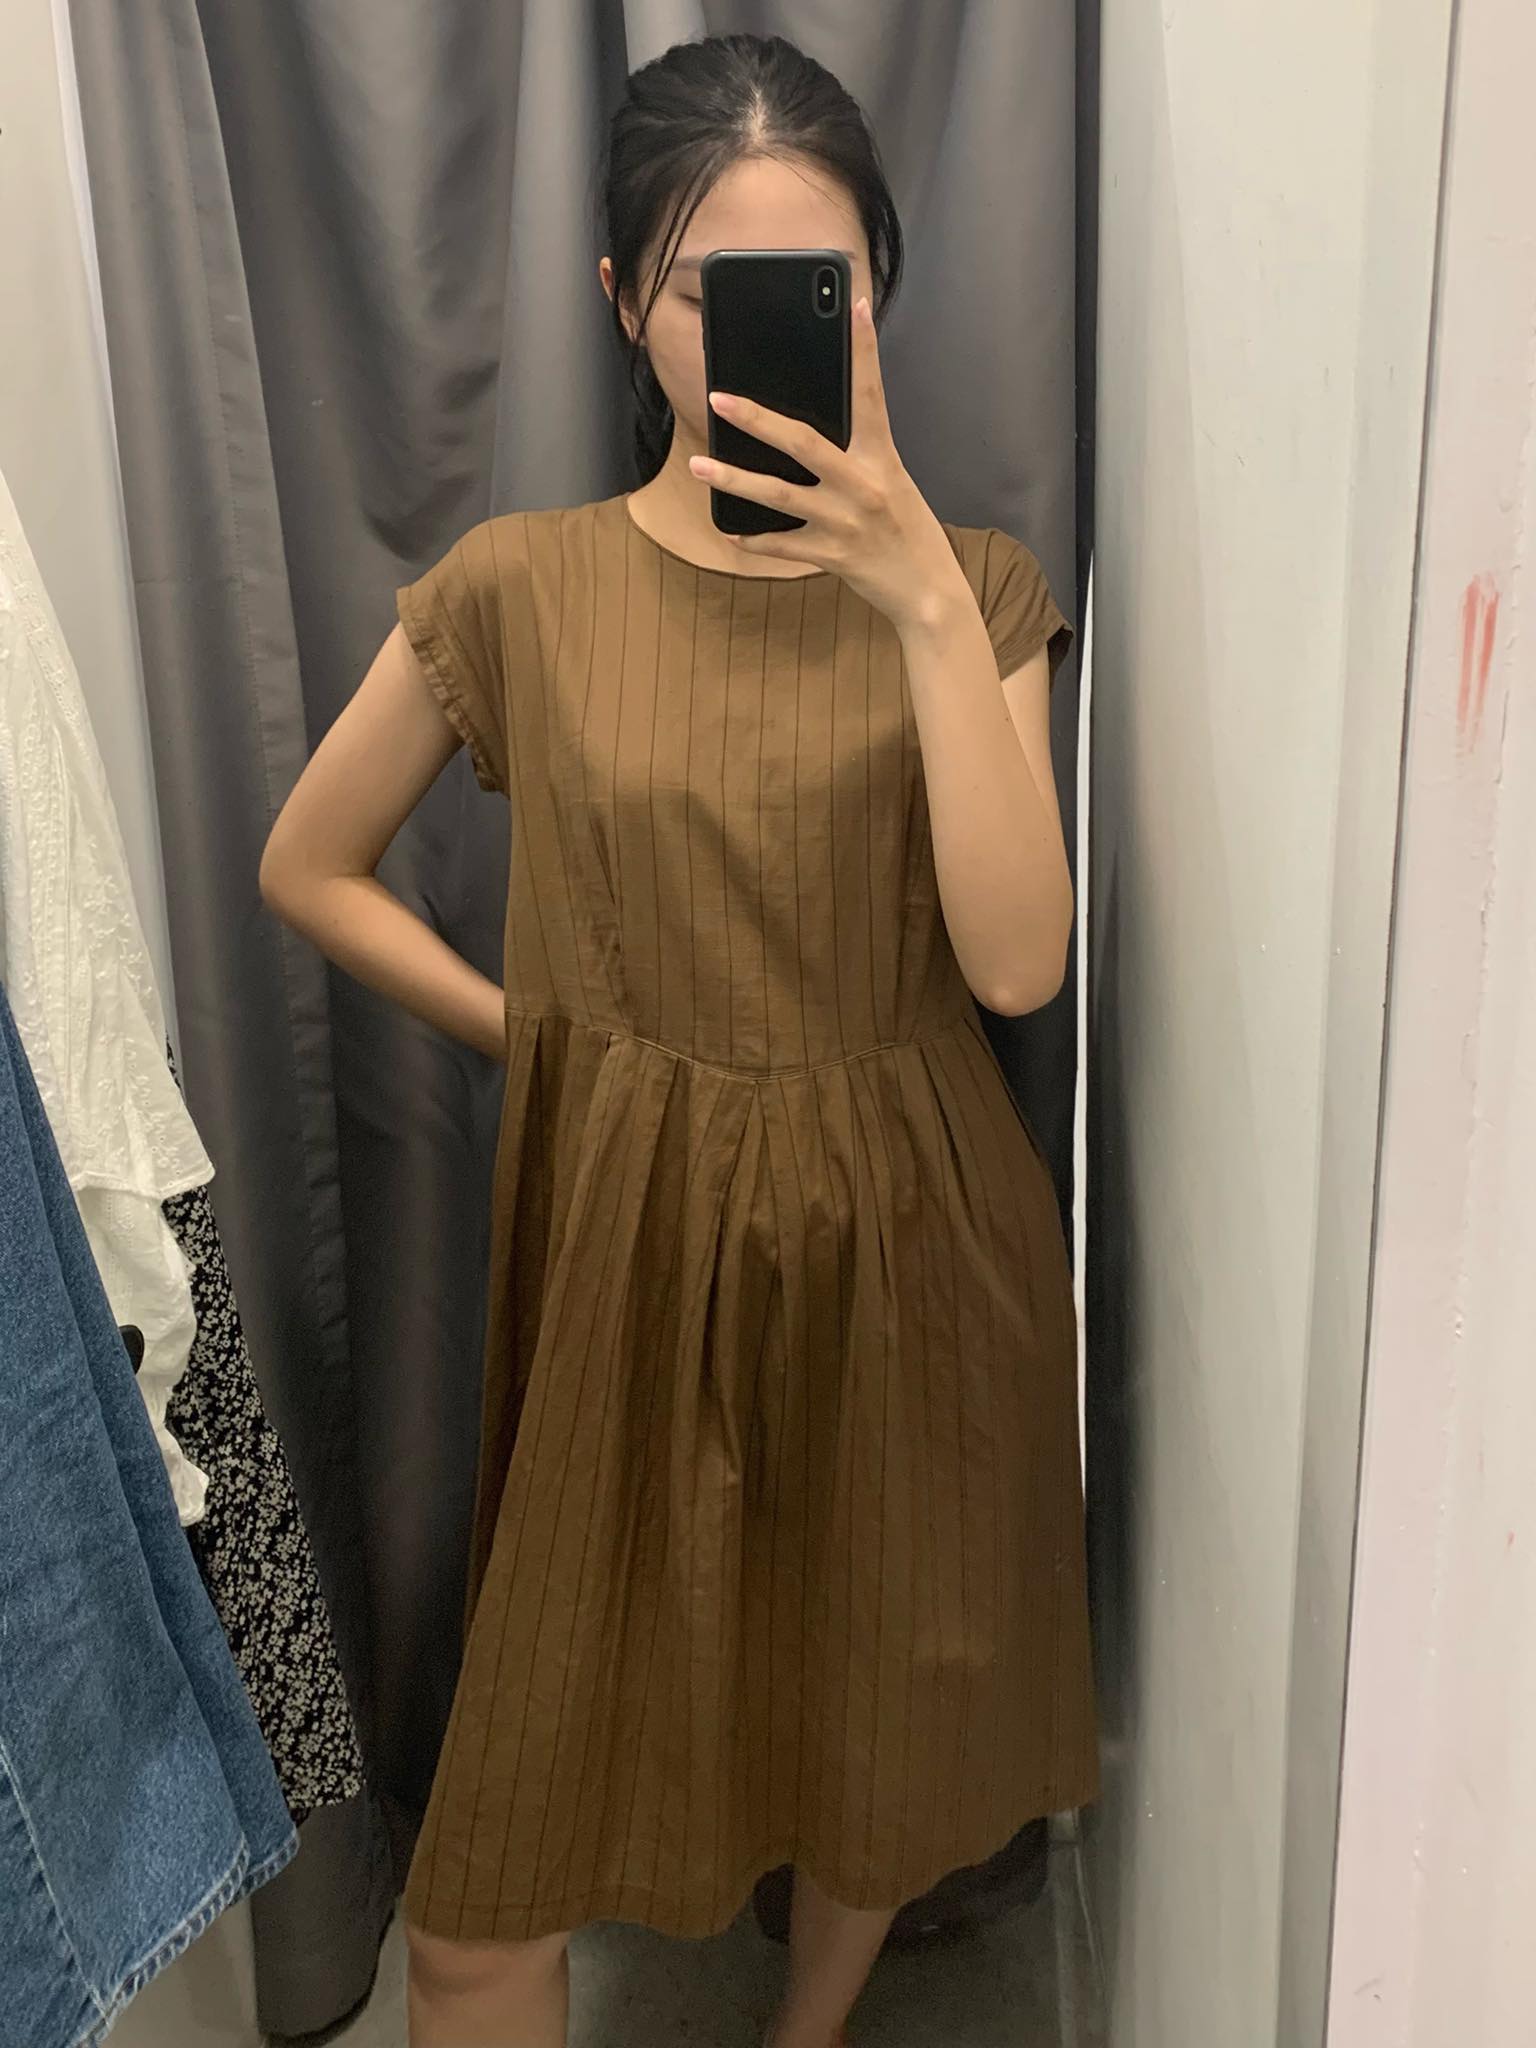 Đi mua sắm tại 3 cửa hàng second-hand đình đám Hà Nội: Mình tìm được nhiều mẫu sơ mi, váy hoa nhí siêu xinh giá từ 150k - Ảnh 7.